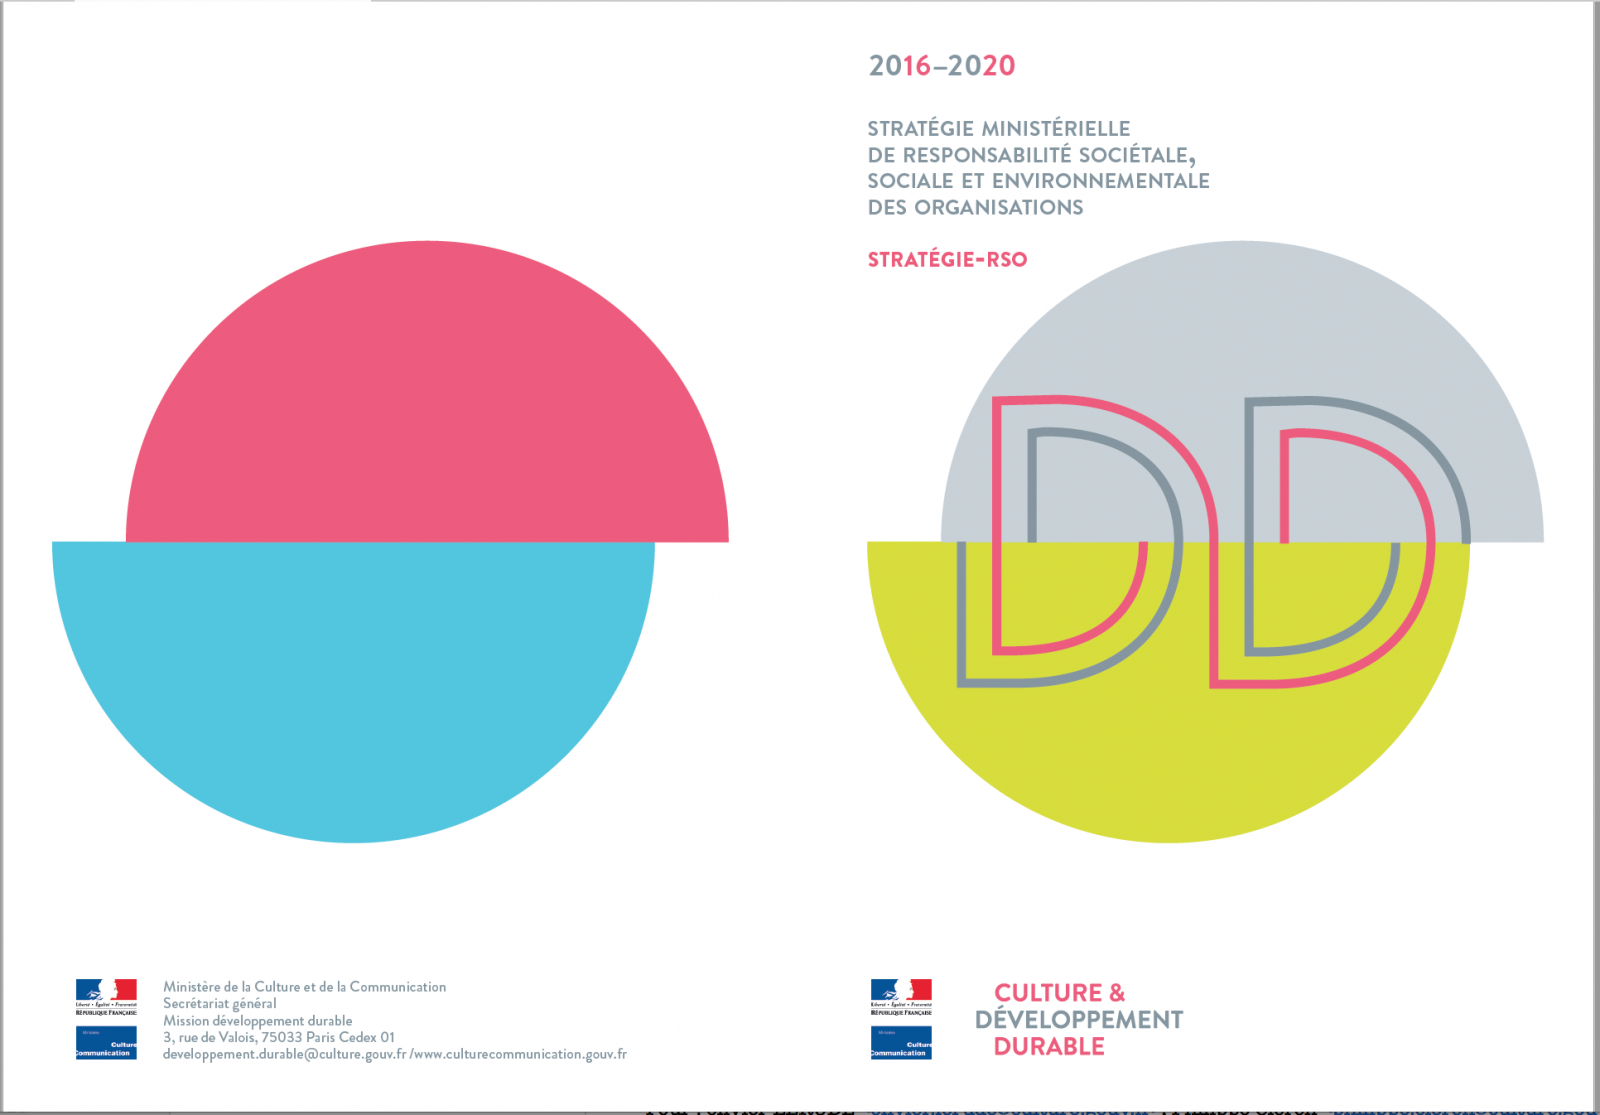 La nouvelle Stratégie-RSO 2016-2020 du ministère de la Culture et de la Communication (Couverture du livret). © MCC